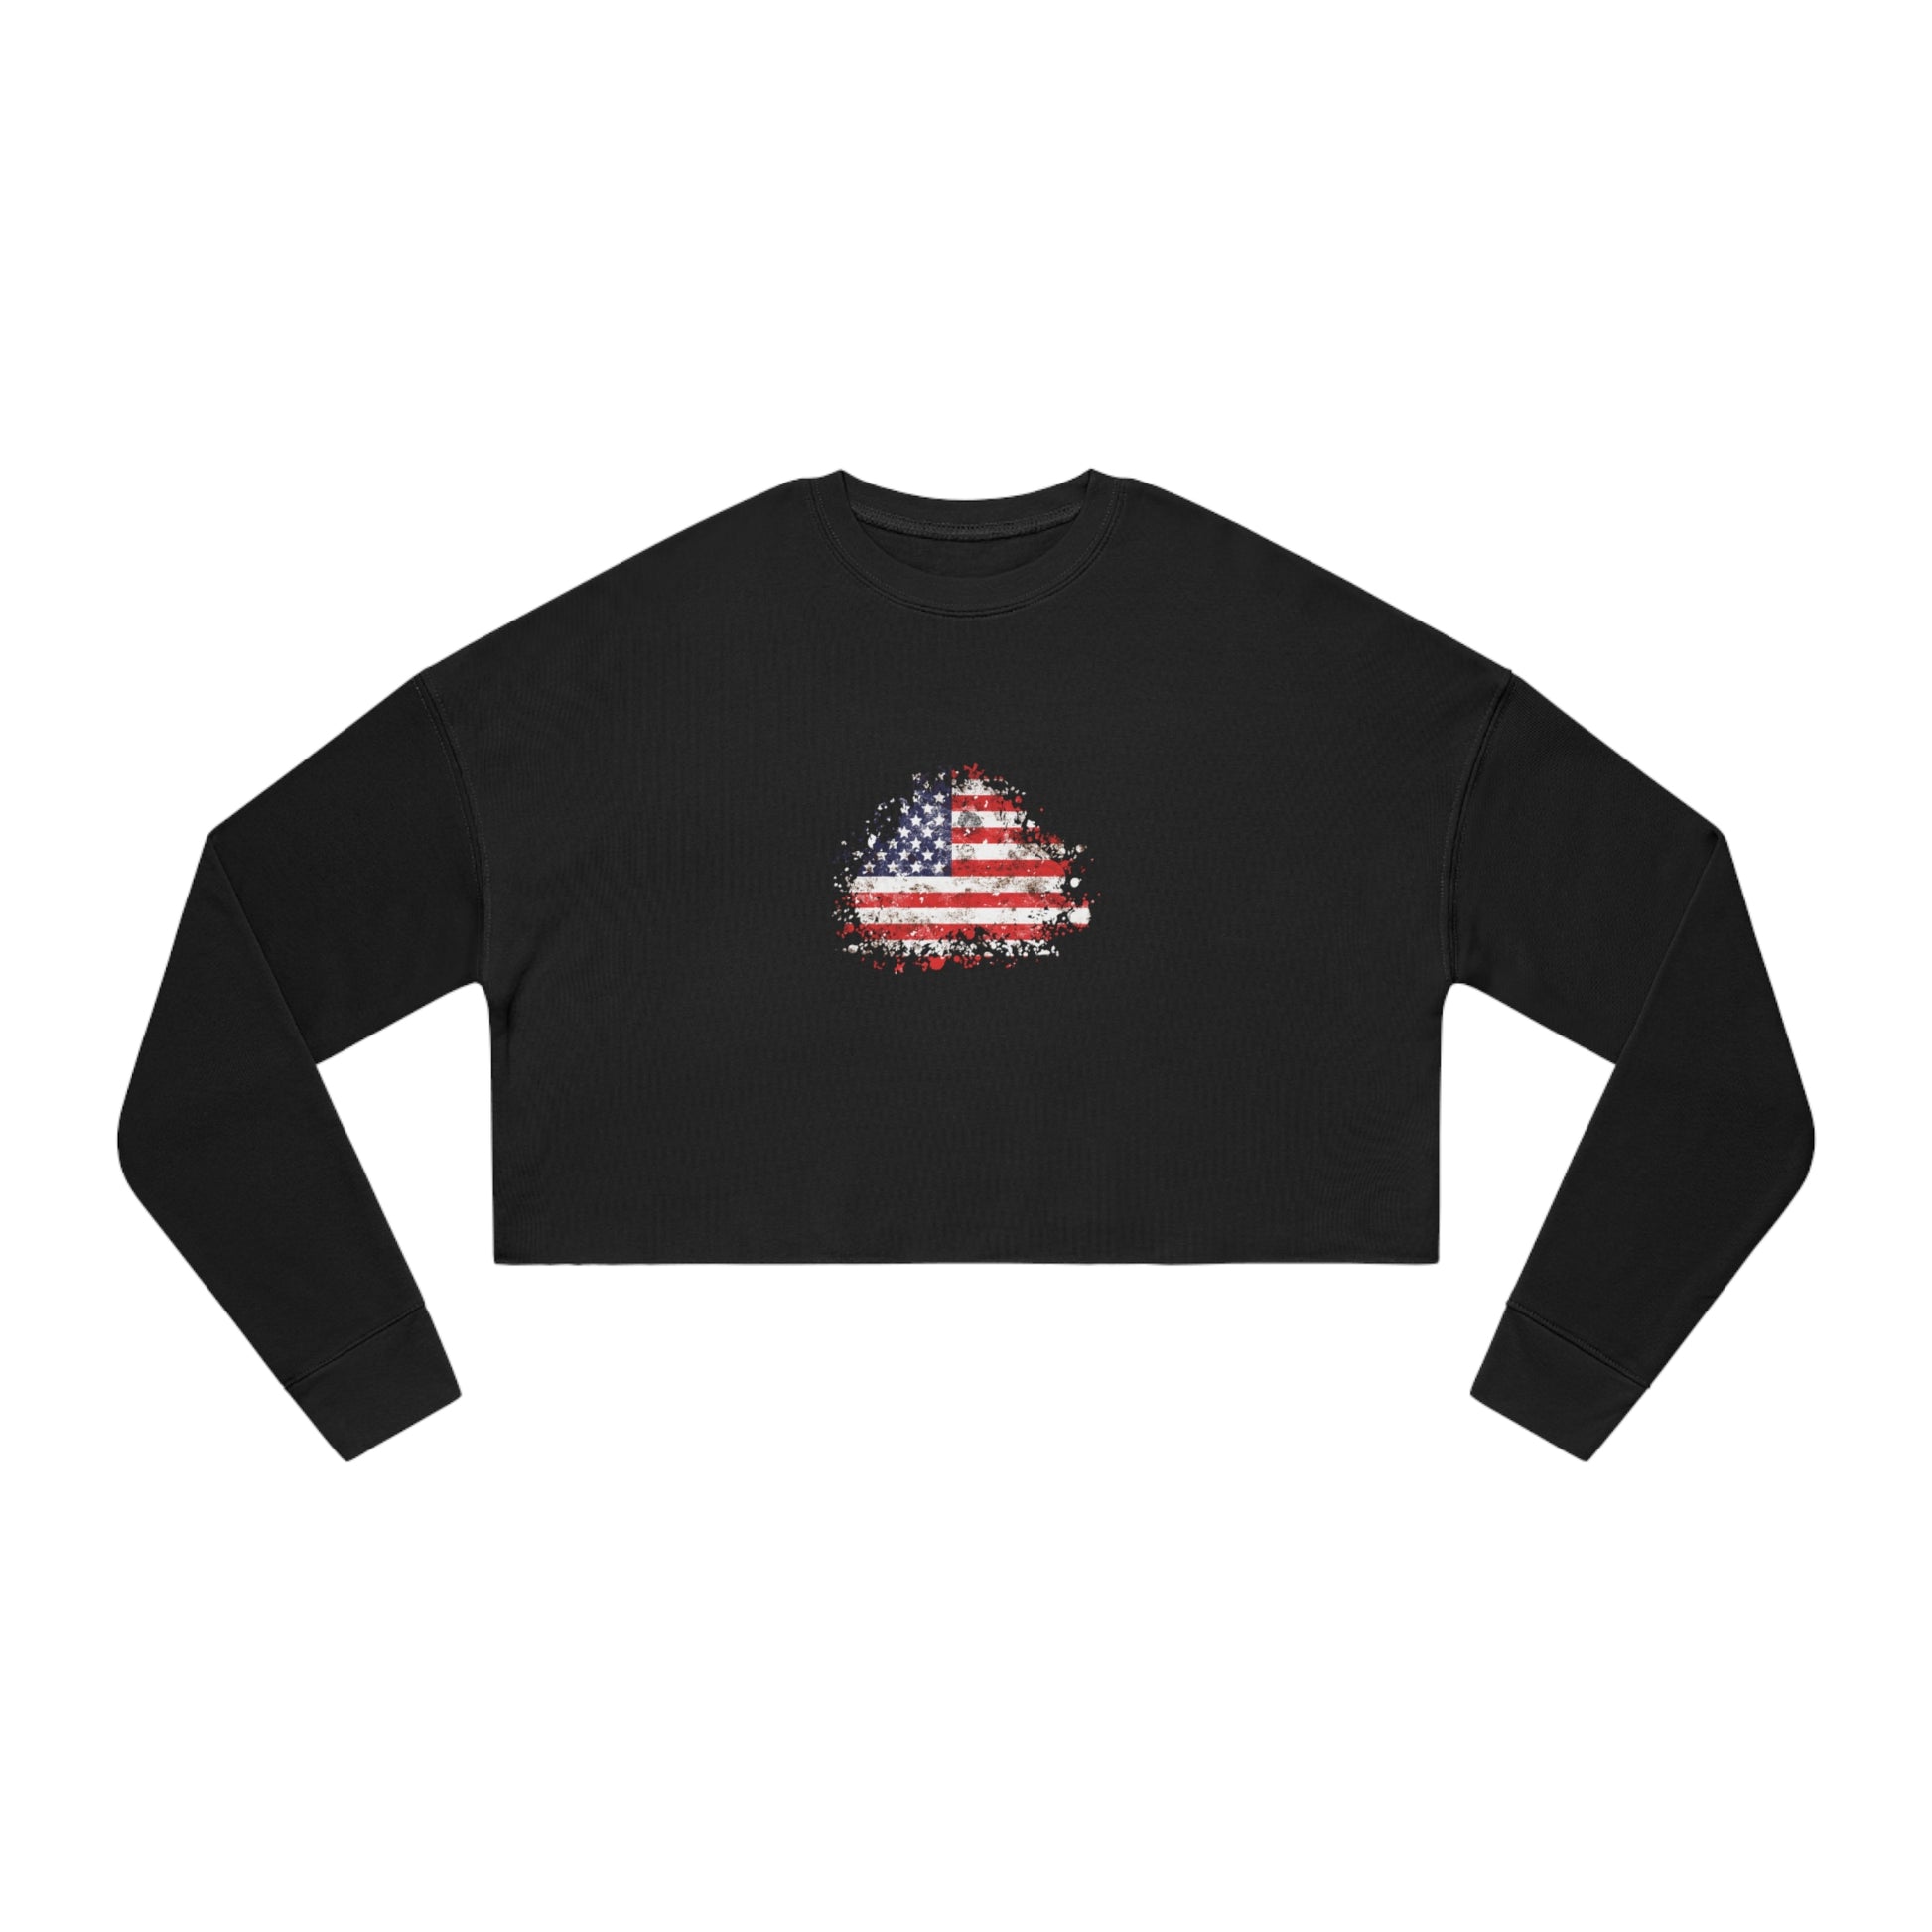 American Flag Sweatshirt Women's in black front